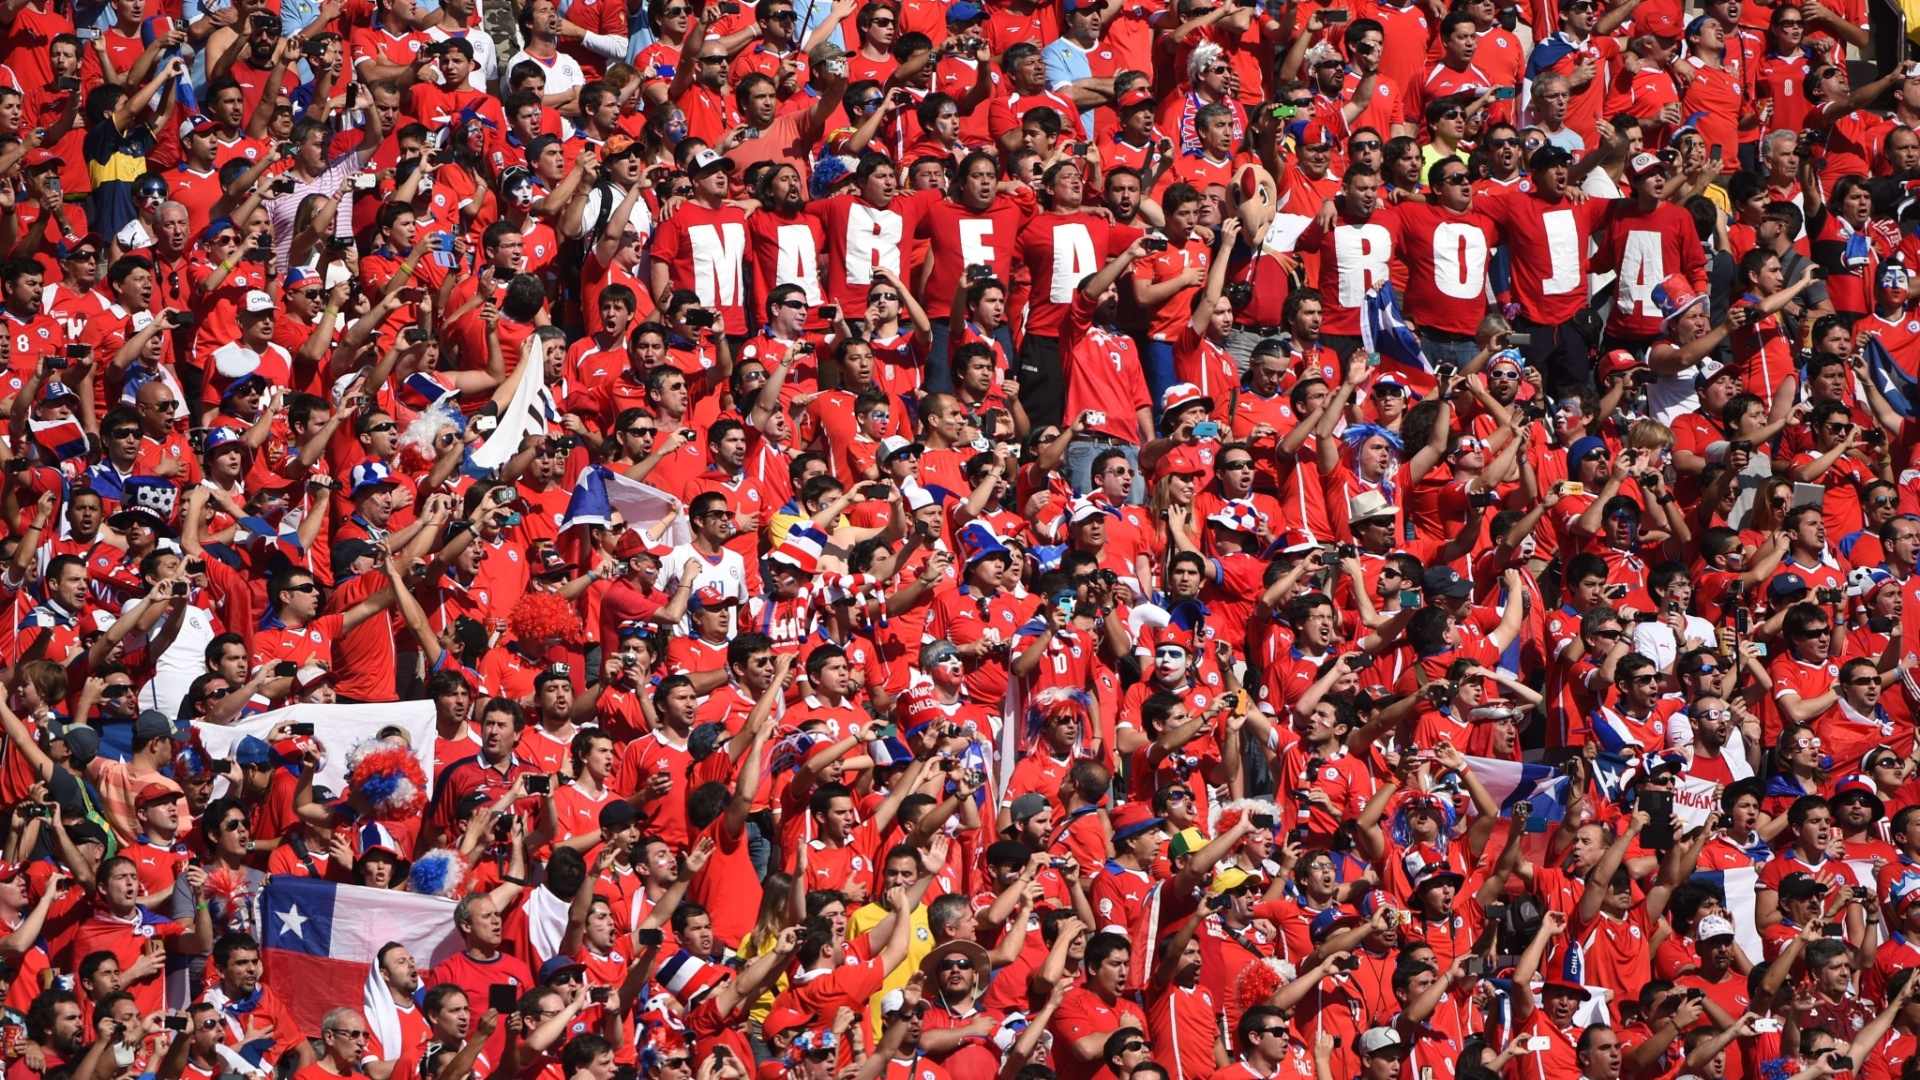 Torcedores do Chile fazem festa no Itaquerão antes do jogo contra a Holanda